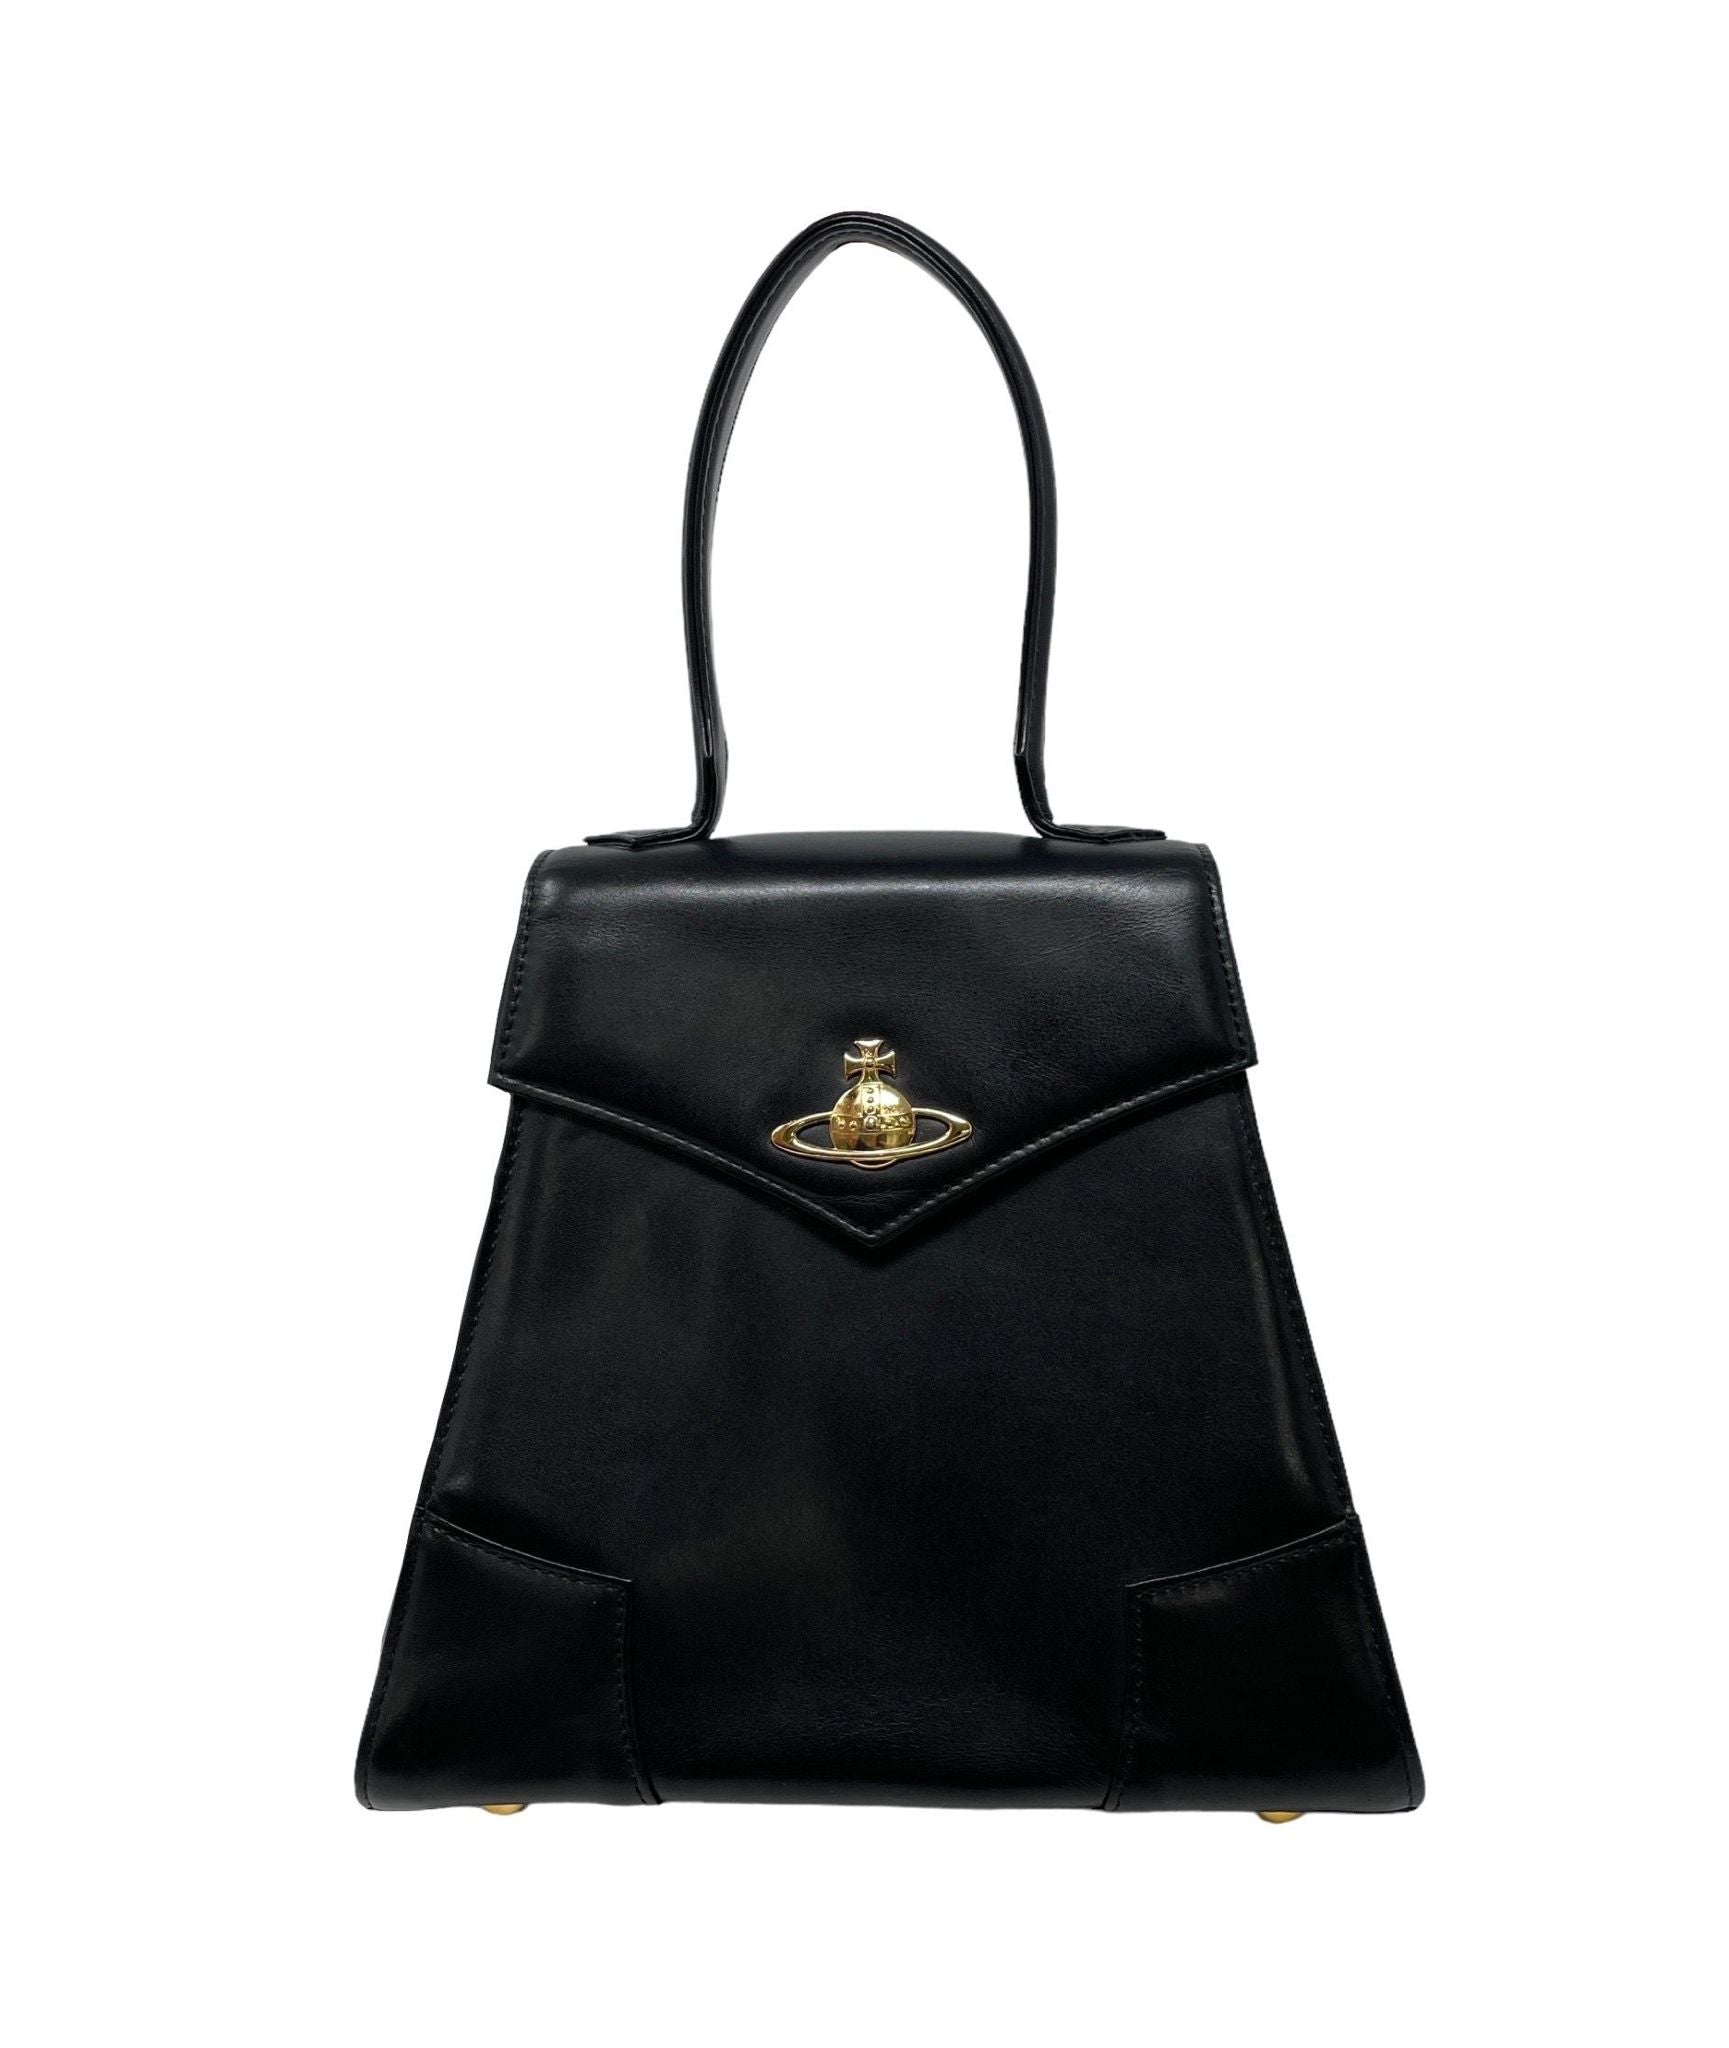 Vivienne Westwood Black Leather Top Handle Bag